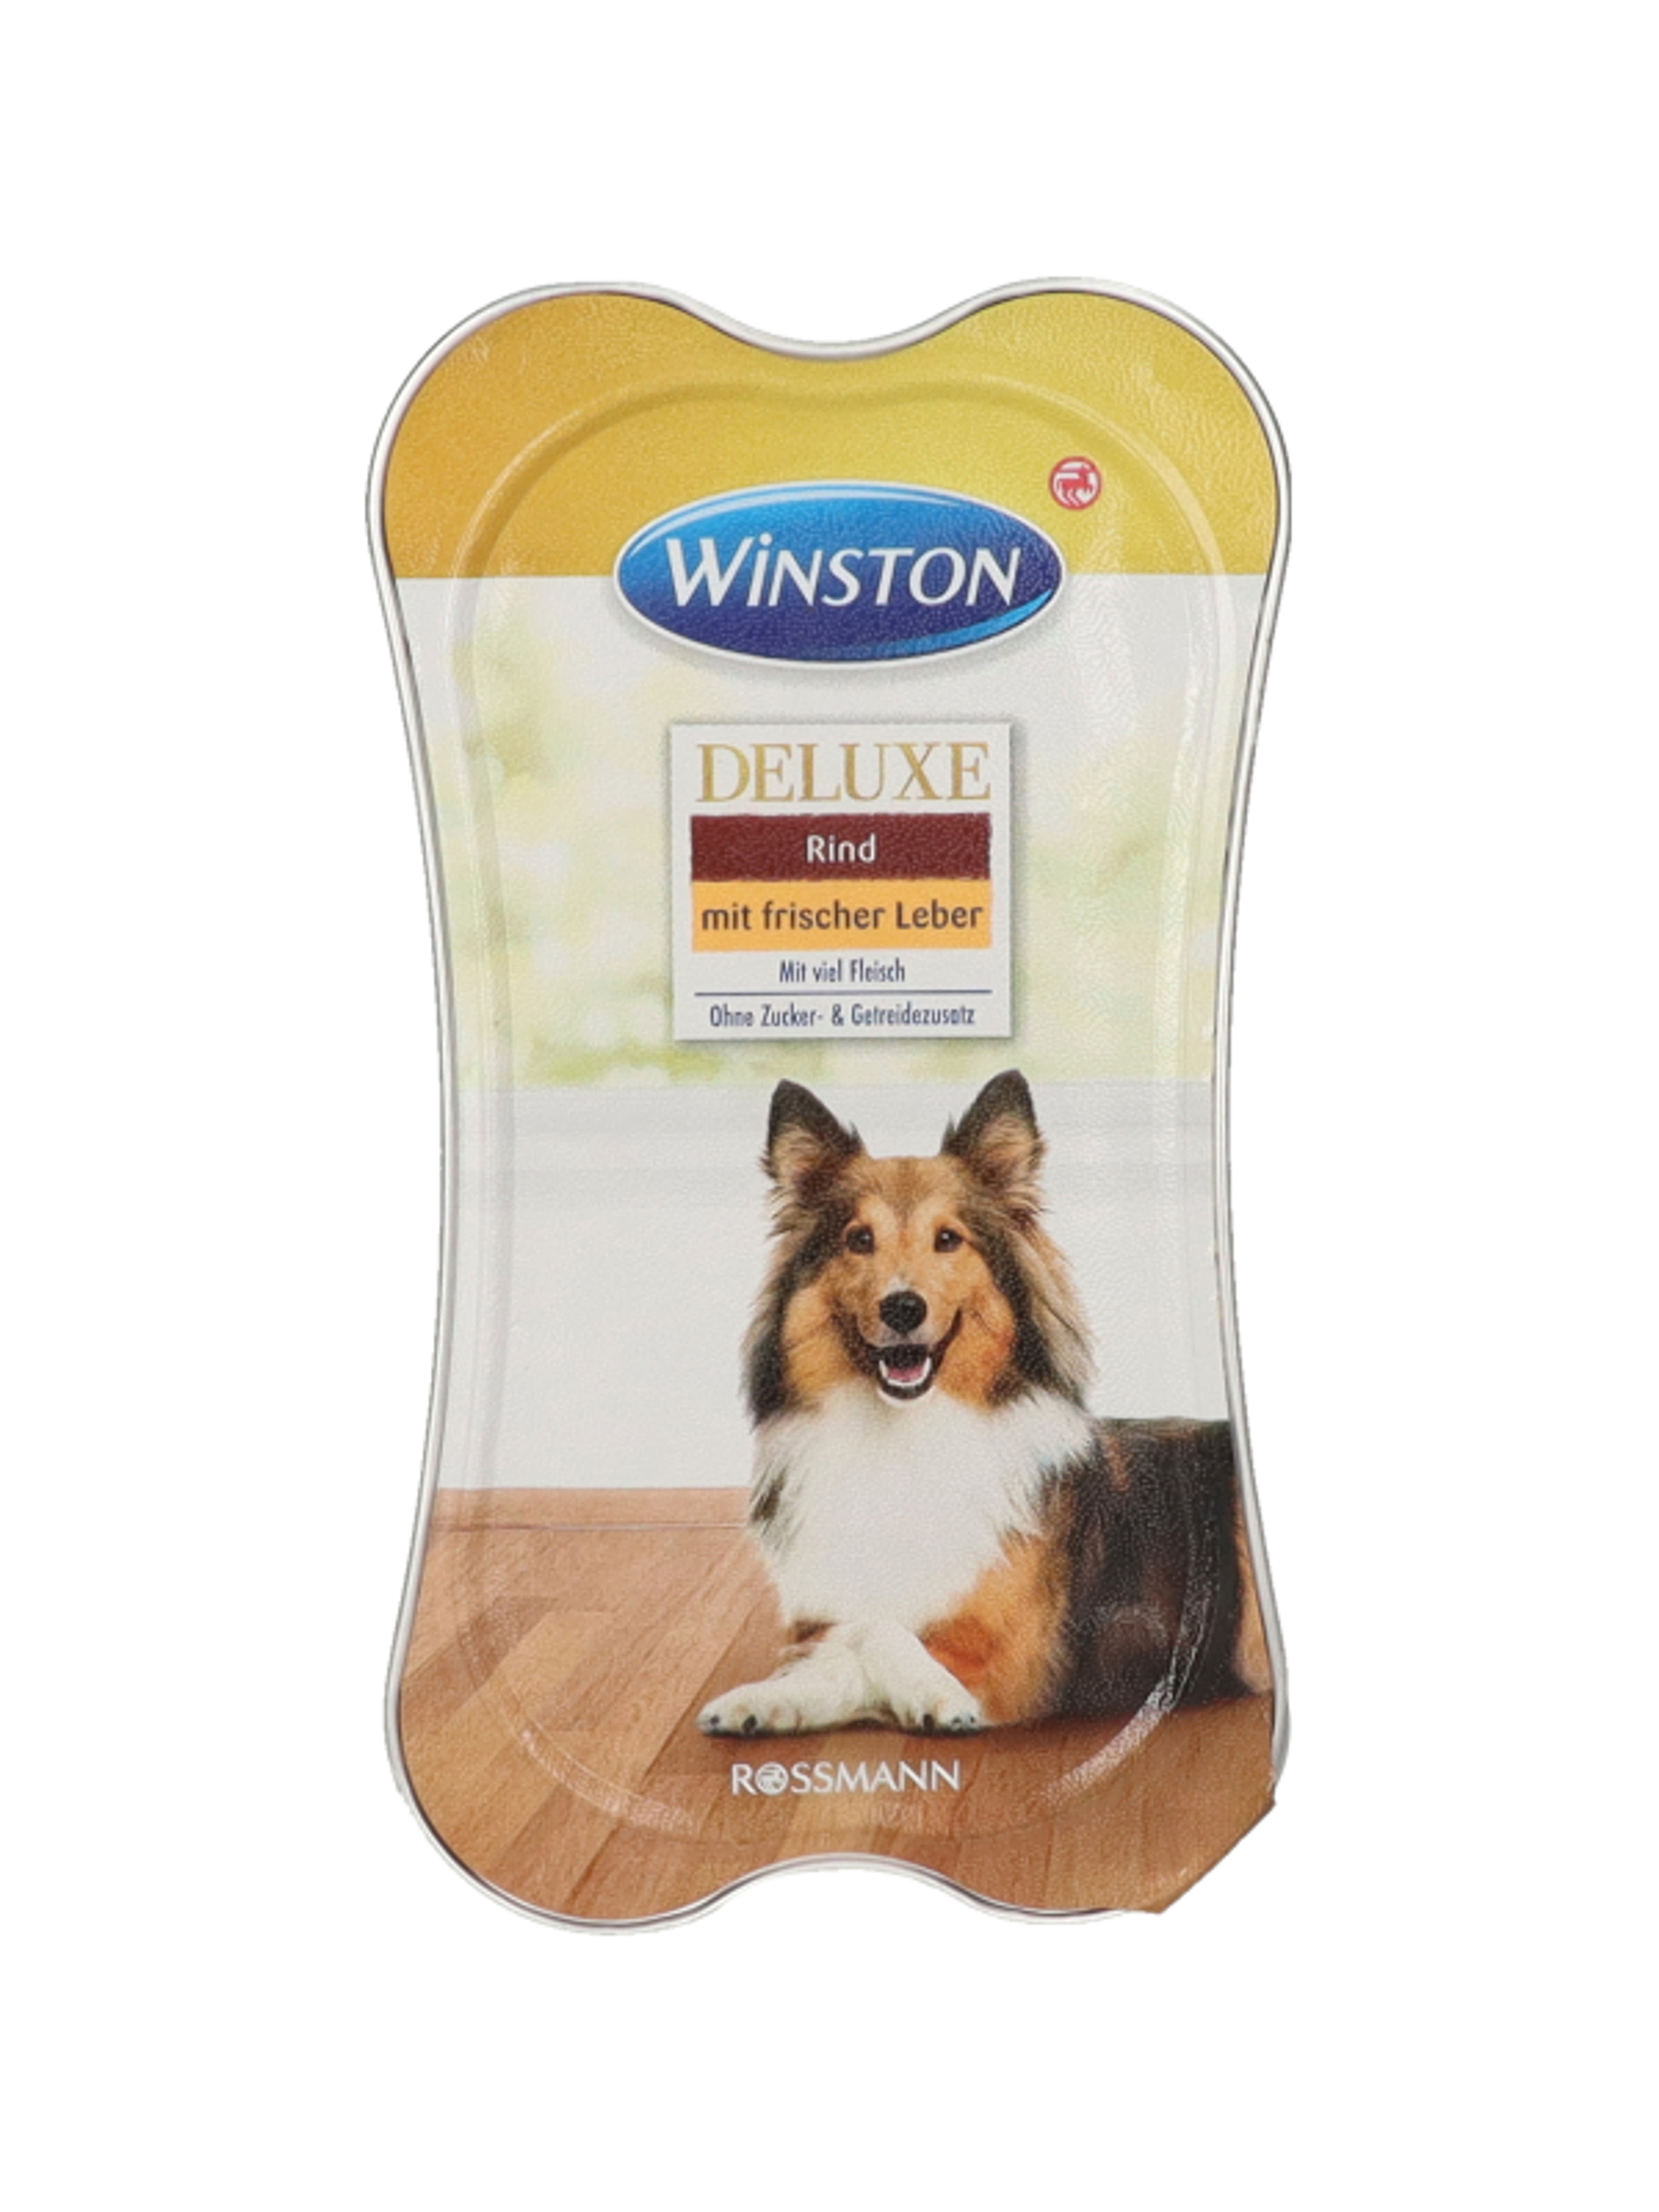 Winston alutasak kutyáknak, marha és máj ízesítéssel - 175 g